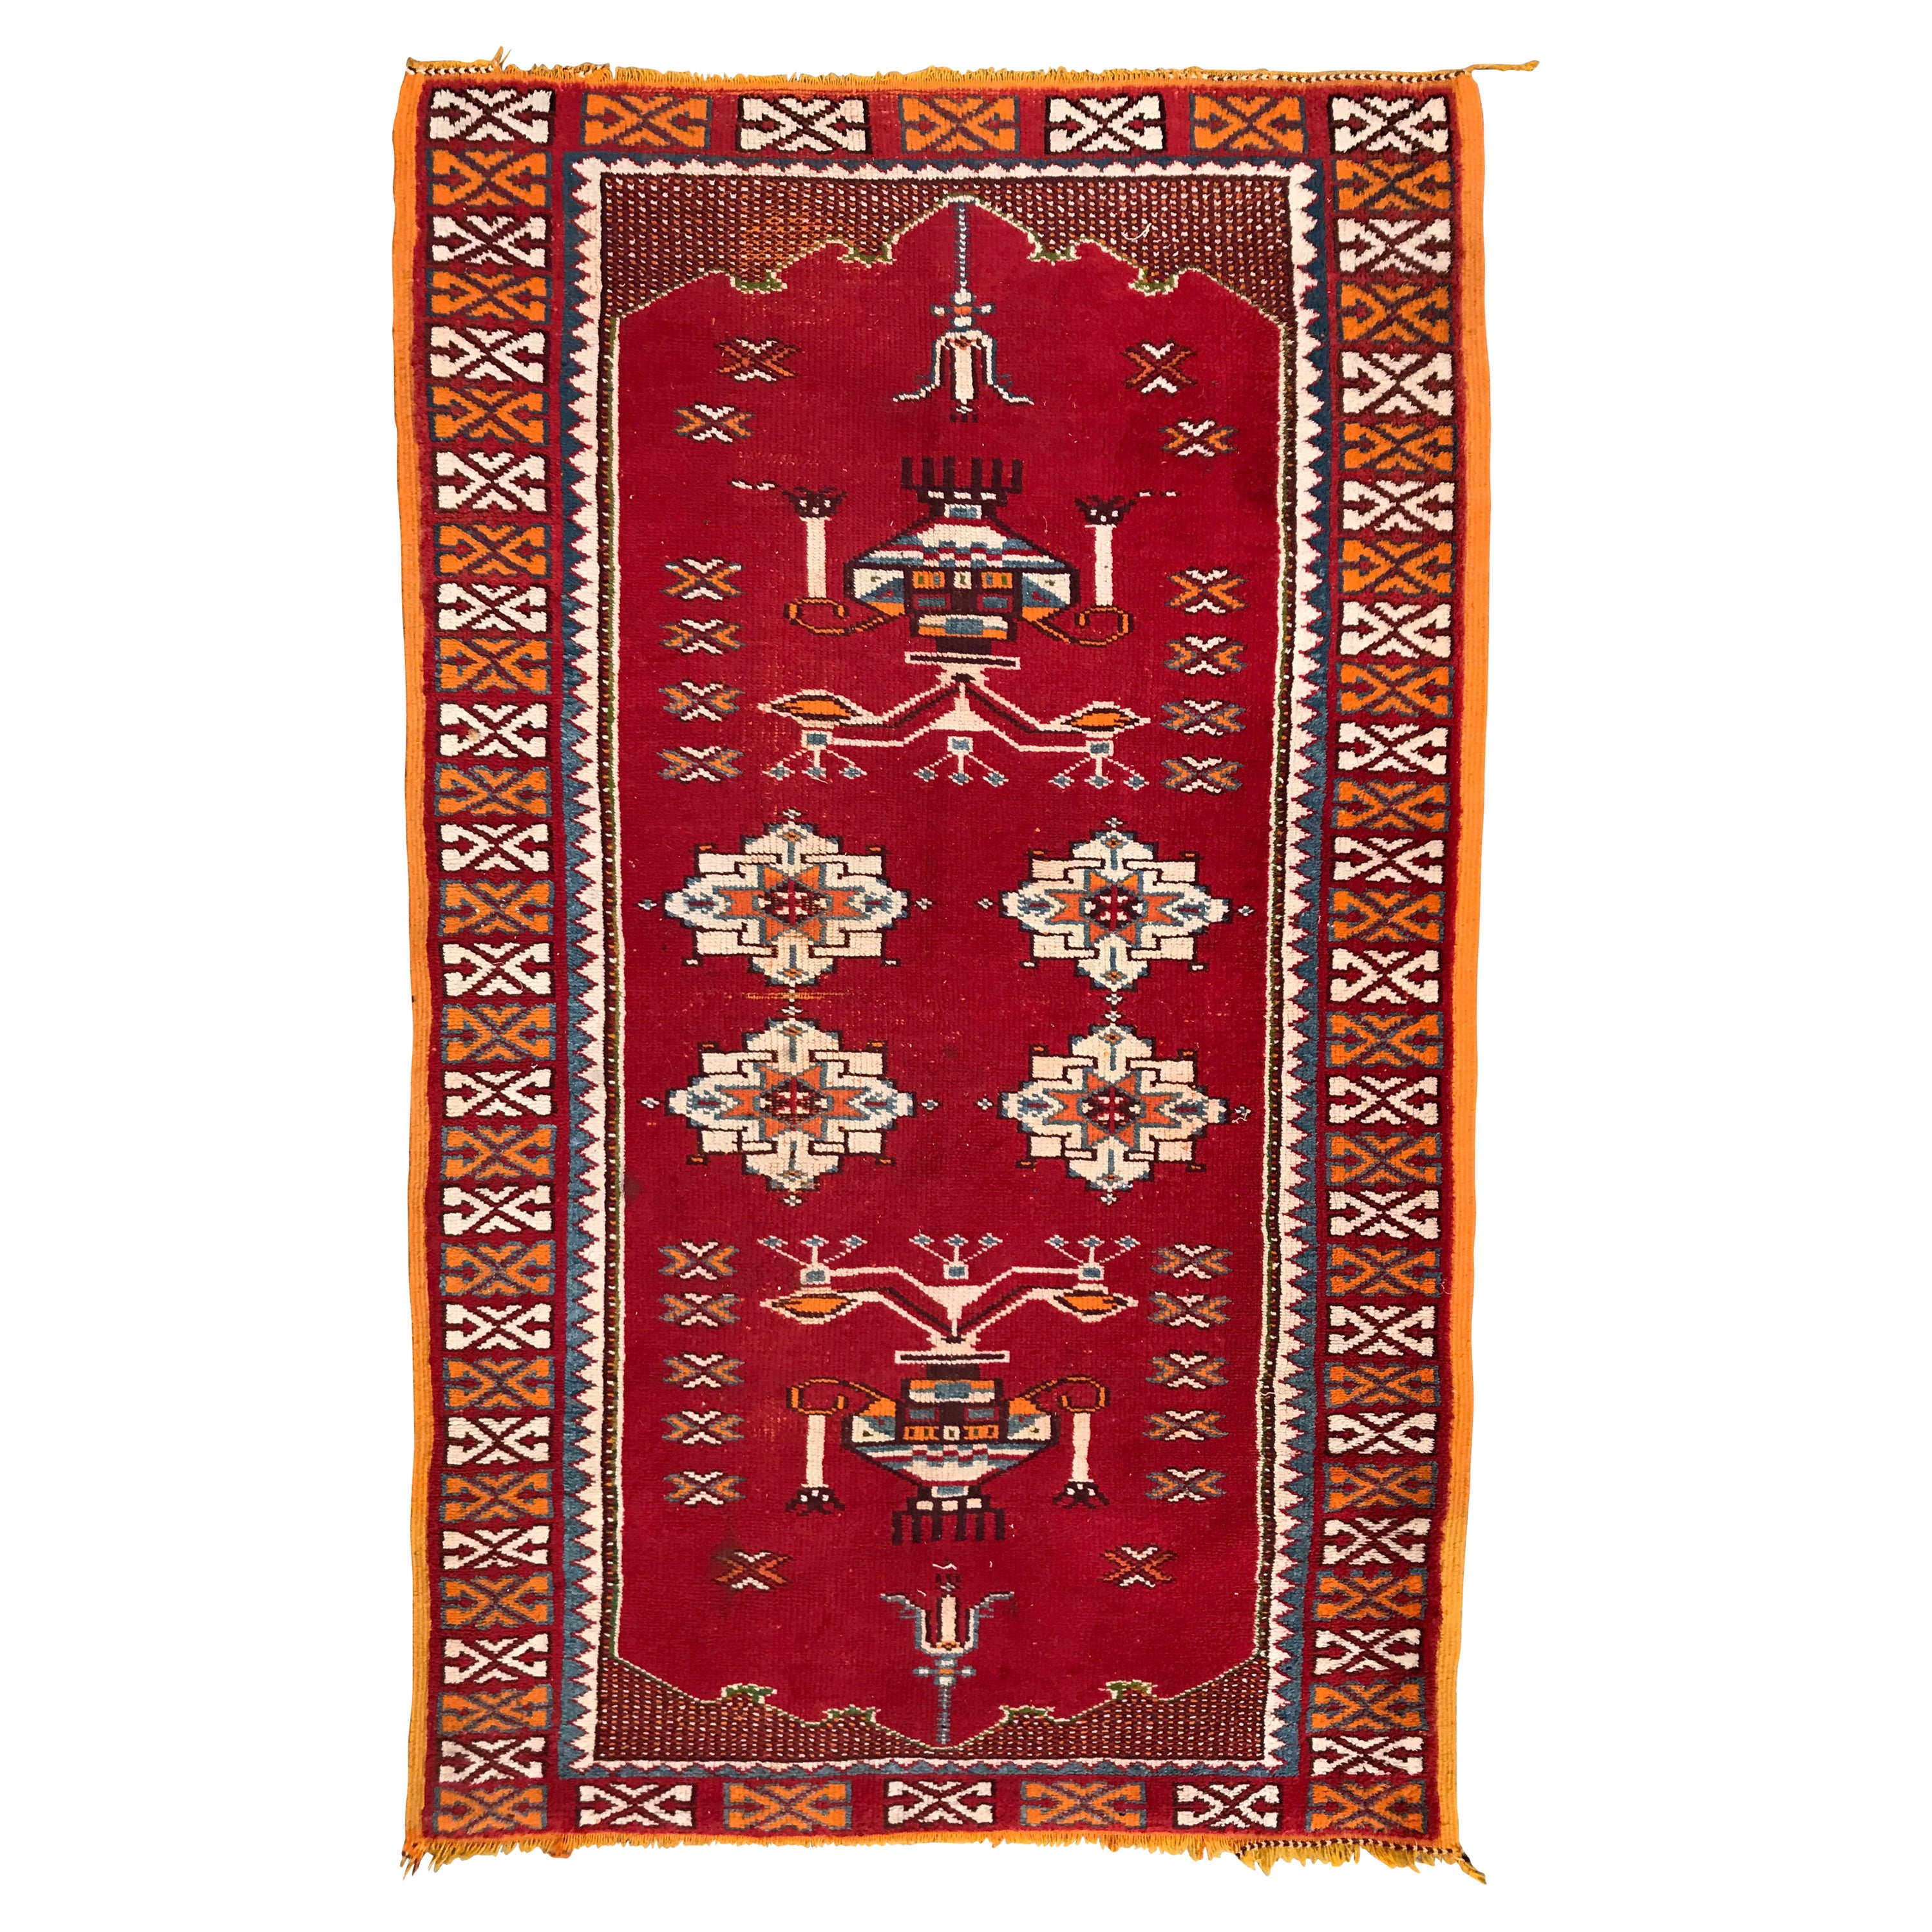 Le joli tapis tribal marocain vintage de Bobyrug